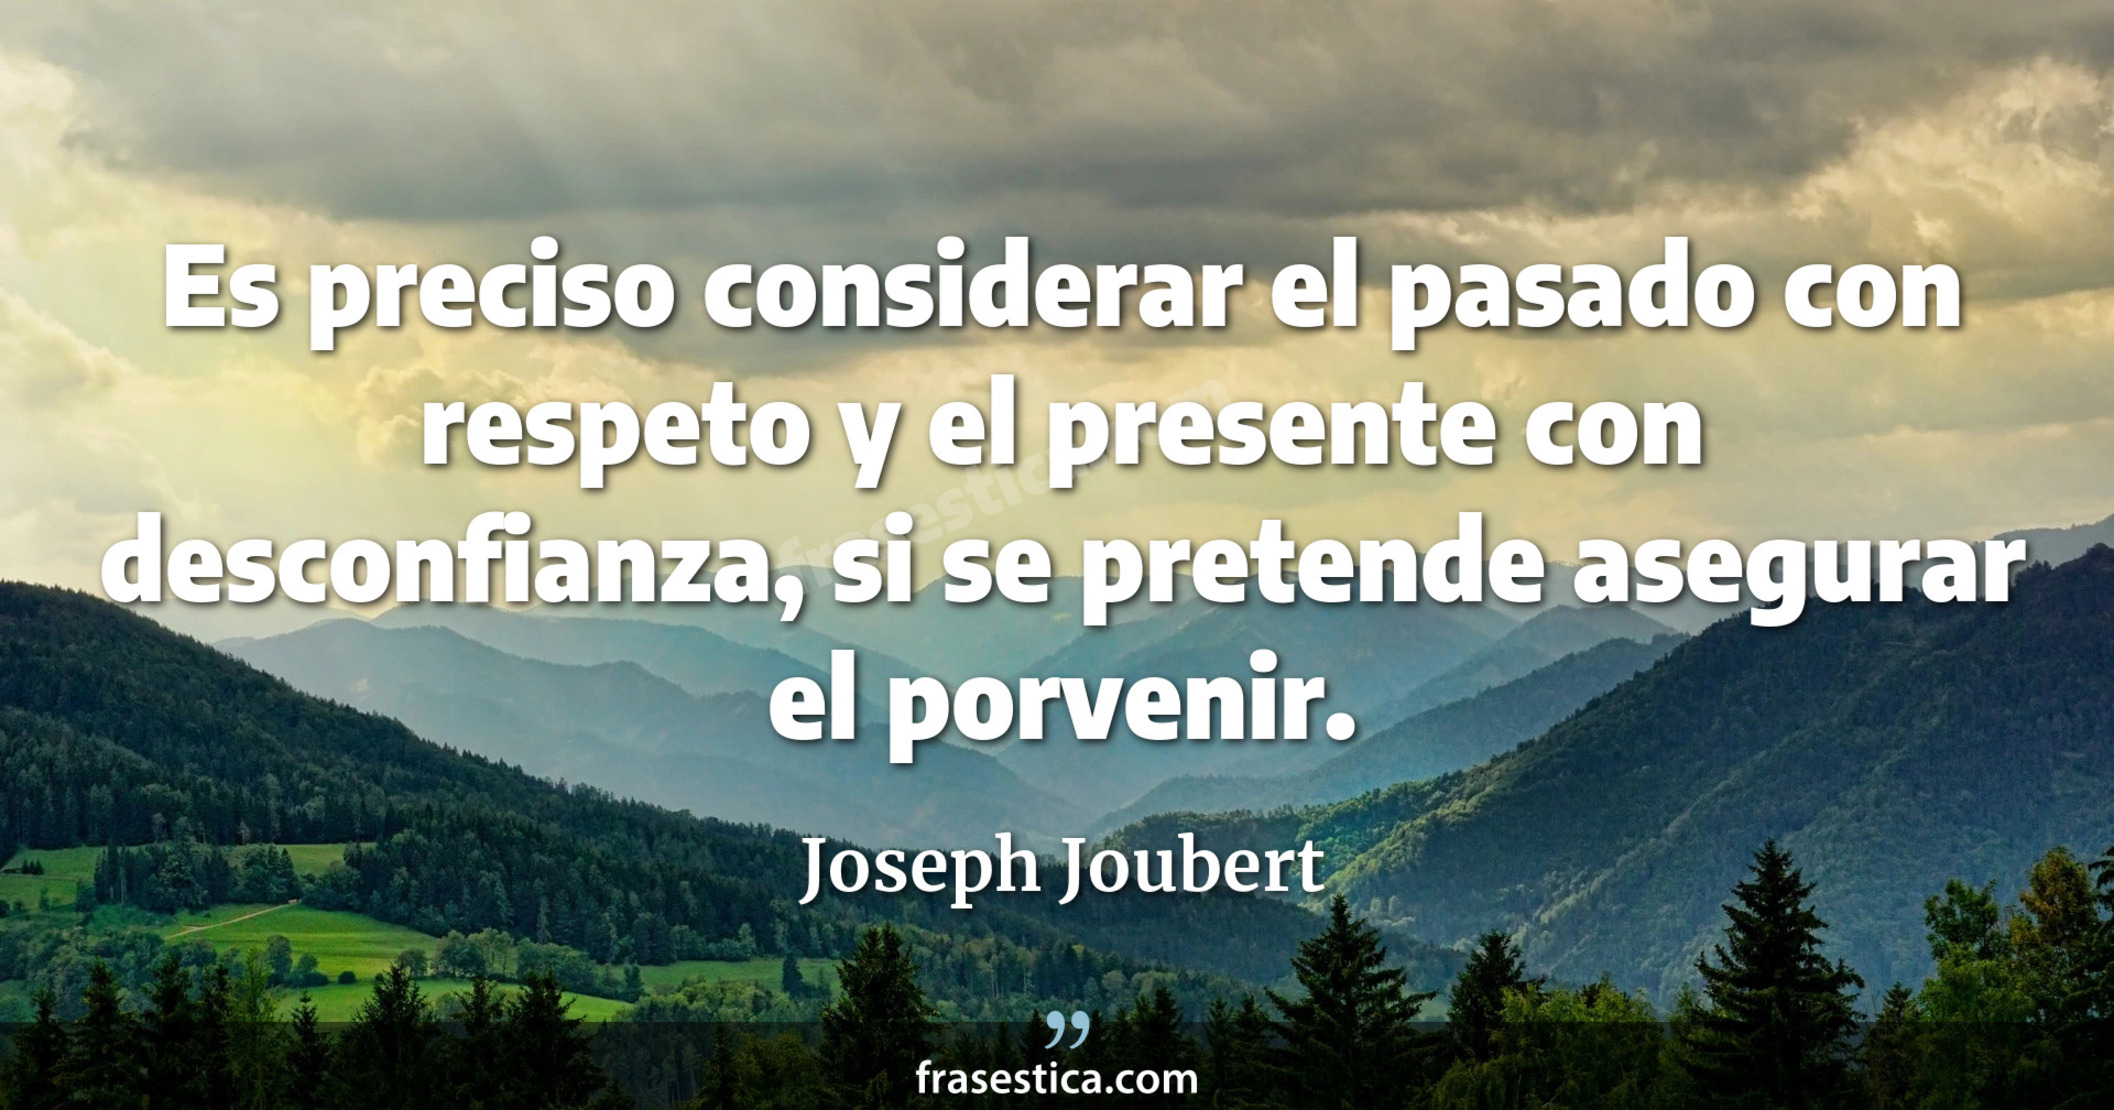 Es preciso considerar el pasado con respeto y el presente con desconfianza, si se pretende asegurar el porvenir. - Joseph Joubert